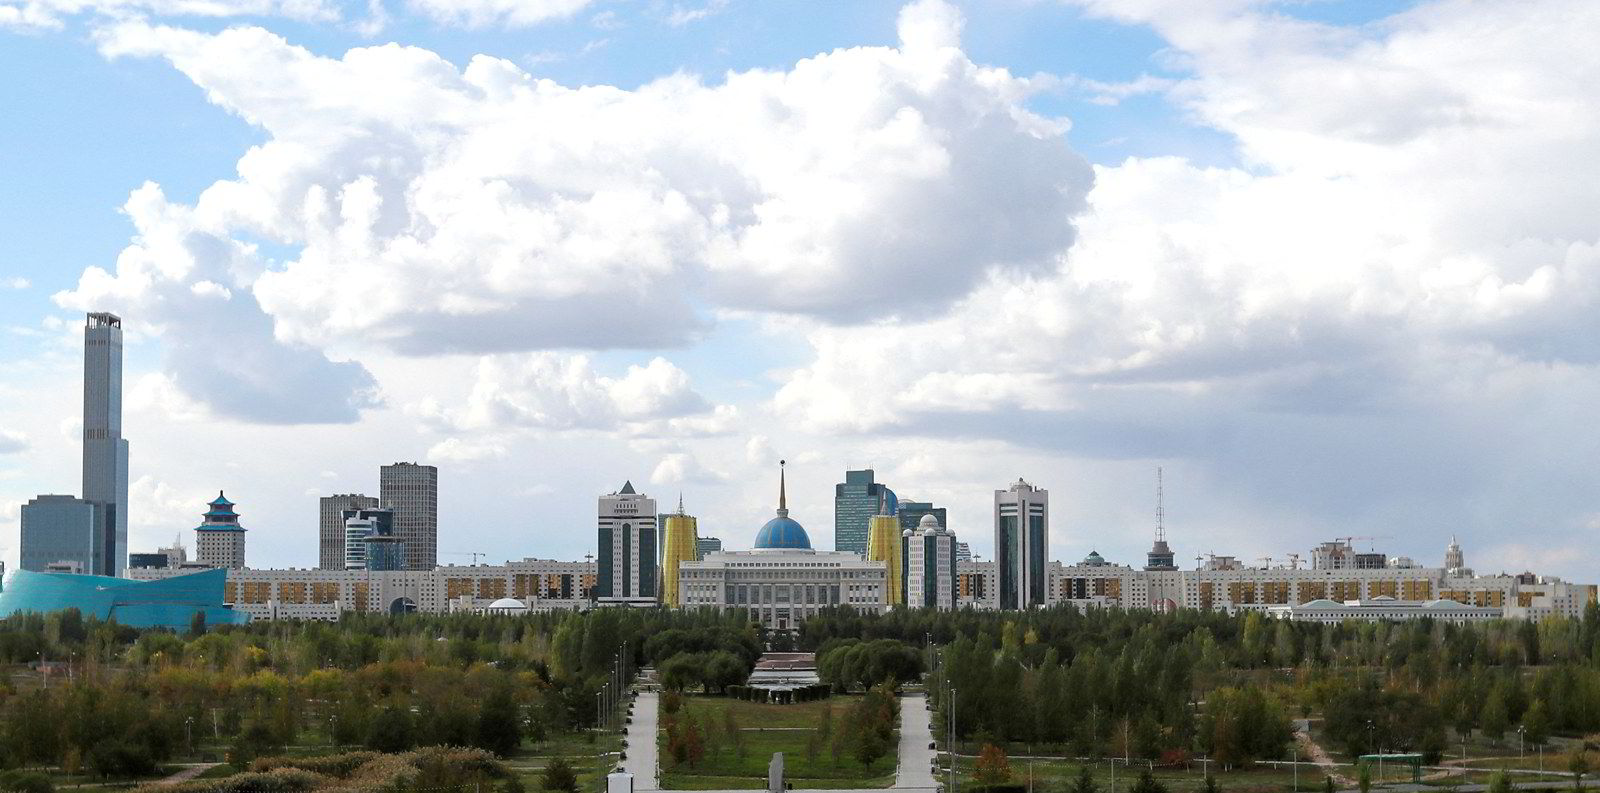 Данное время в казахстане. Казахстан. Казакистан. Kazakistan Skyline. Время в Казахстане сейчас.